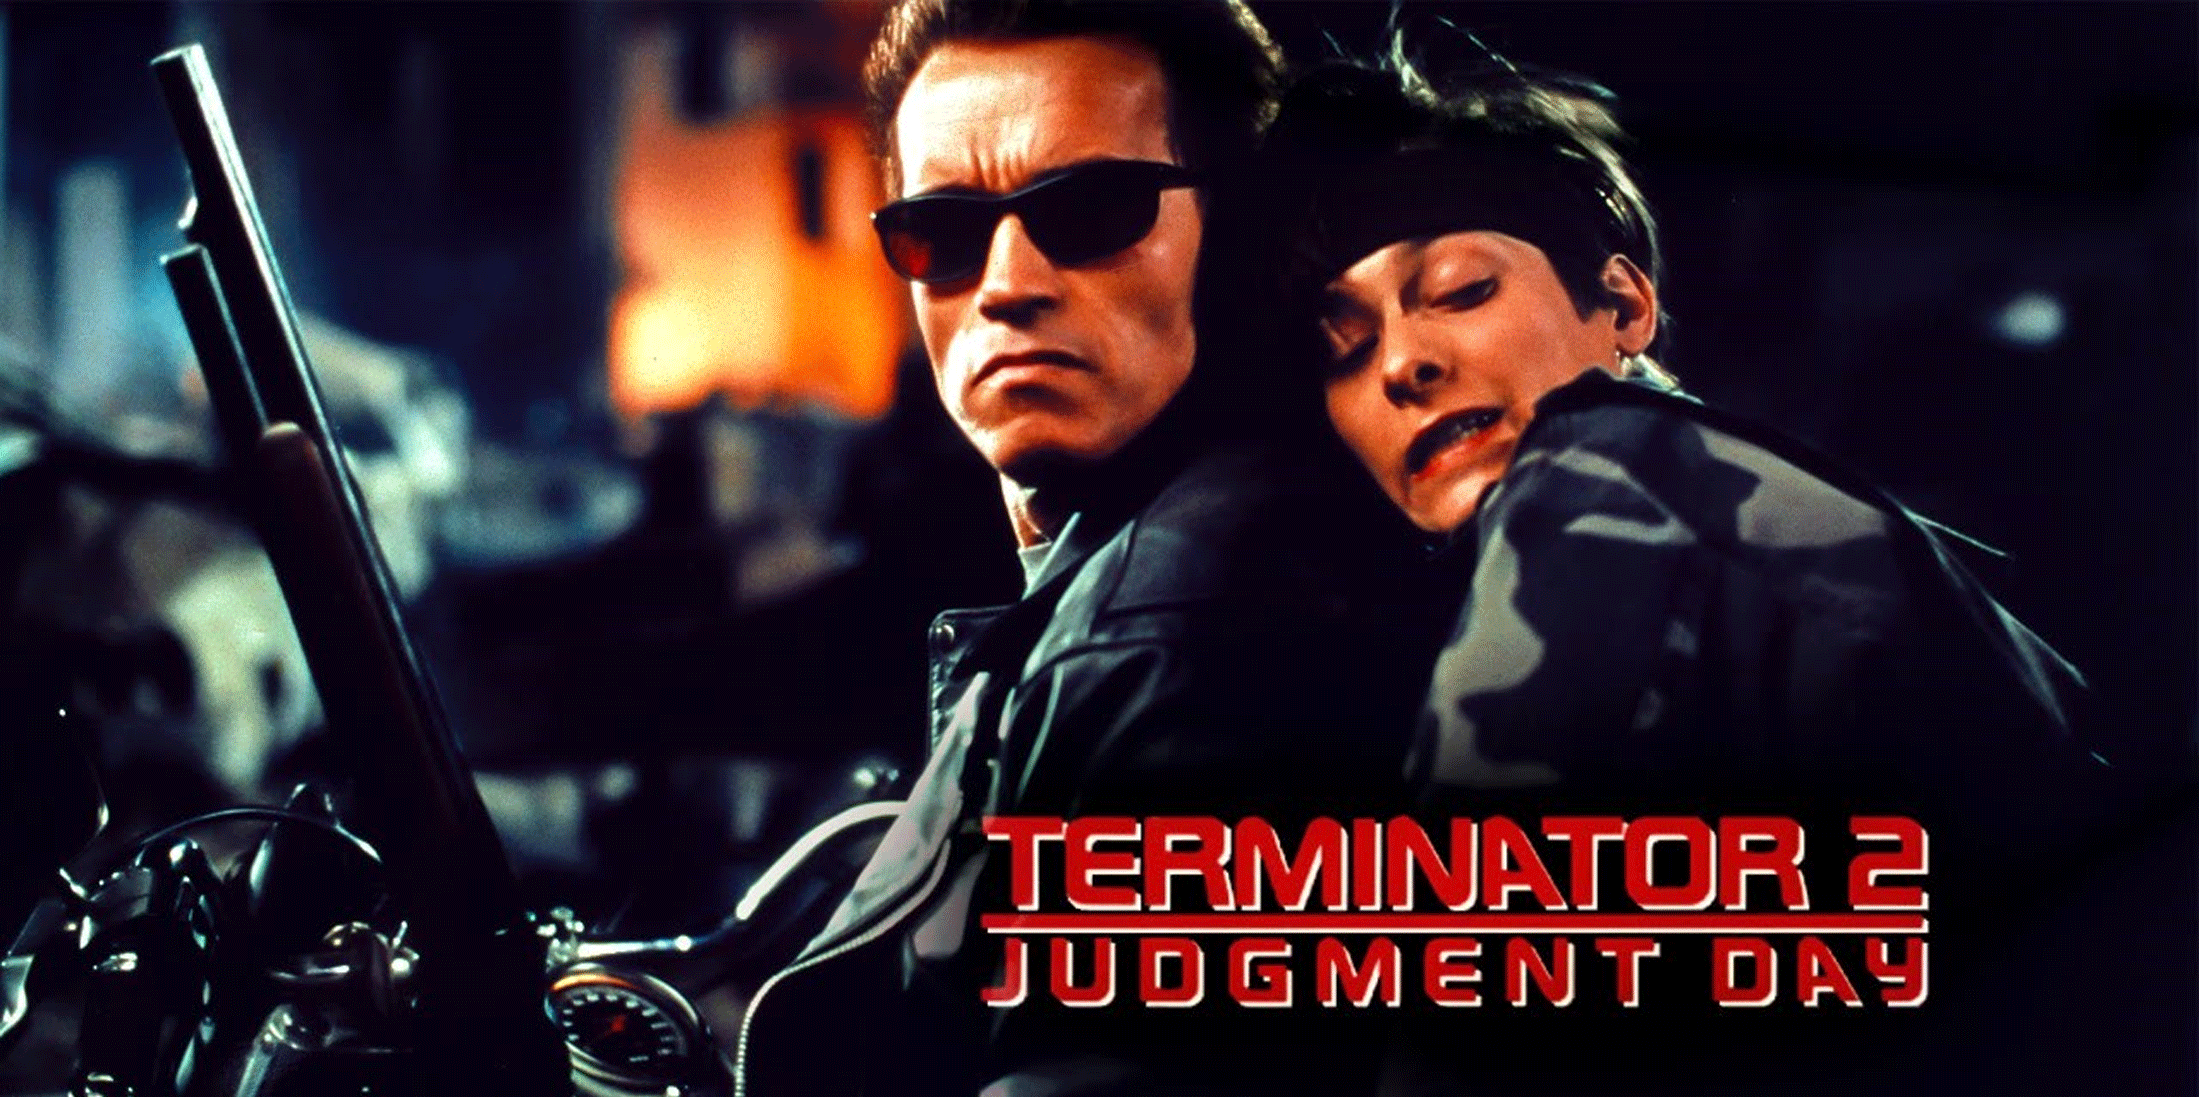 Терминатор 2 судный день русский. Терминатор 2 Judgment Day. Терминатор 2 1991. Terminator 2 Judgement Day. Terminator 2 Judgment Day 1991.